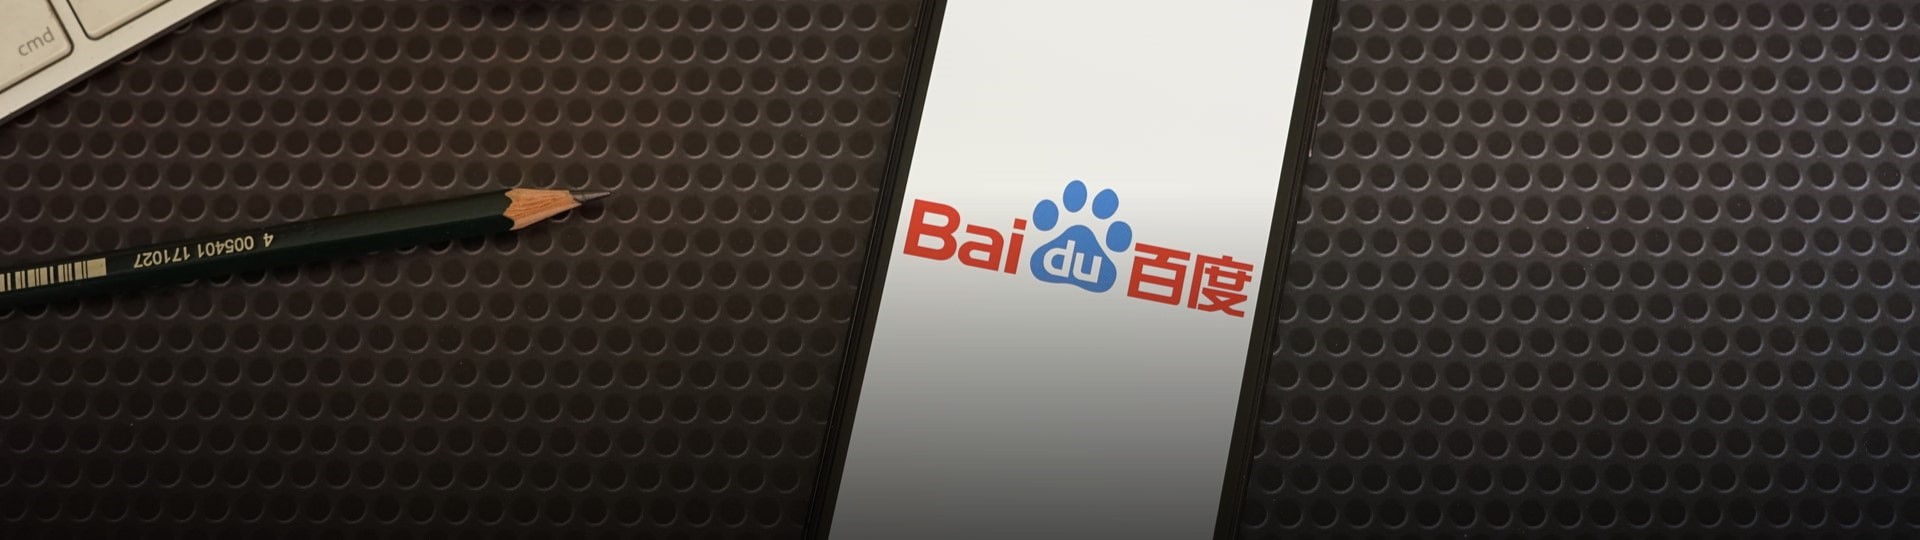 Baidu v pátek vstoupí na hongkongskou burzu